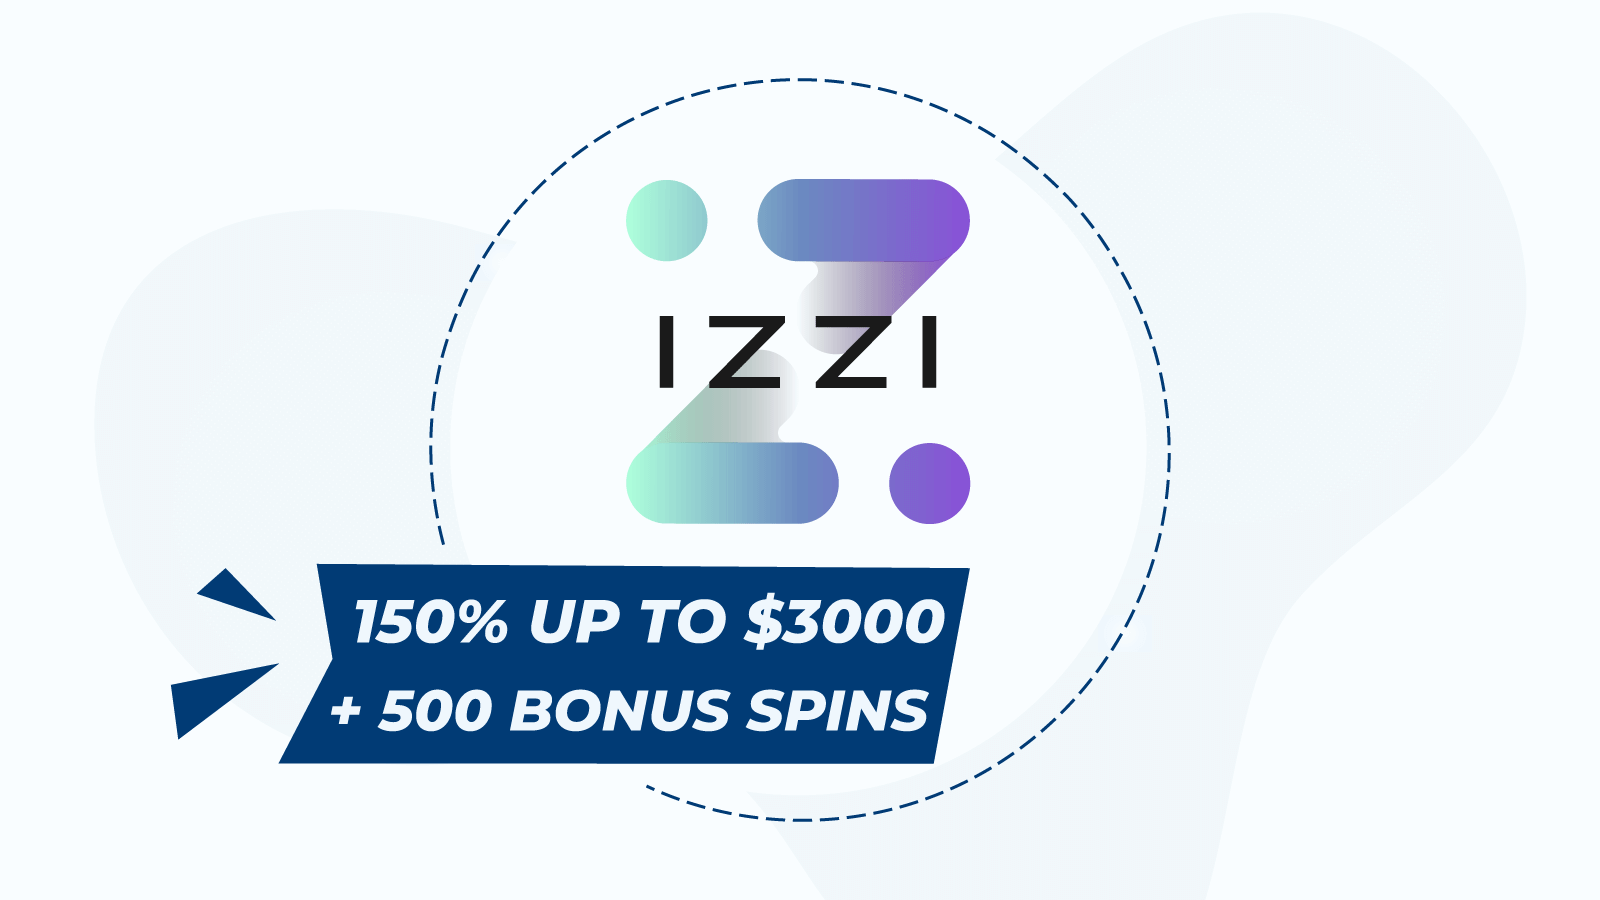 Start with 150% up to ¥3000 + 500 bonus spins at Izzi Casino